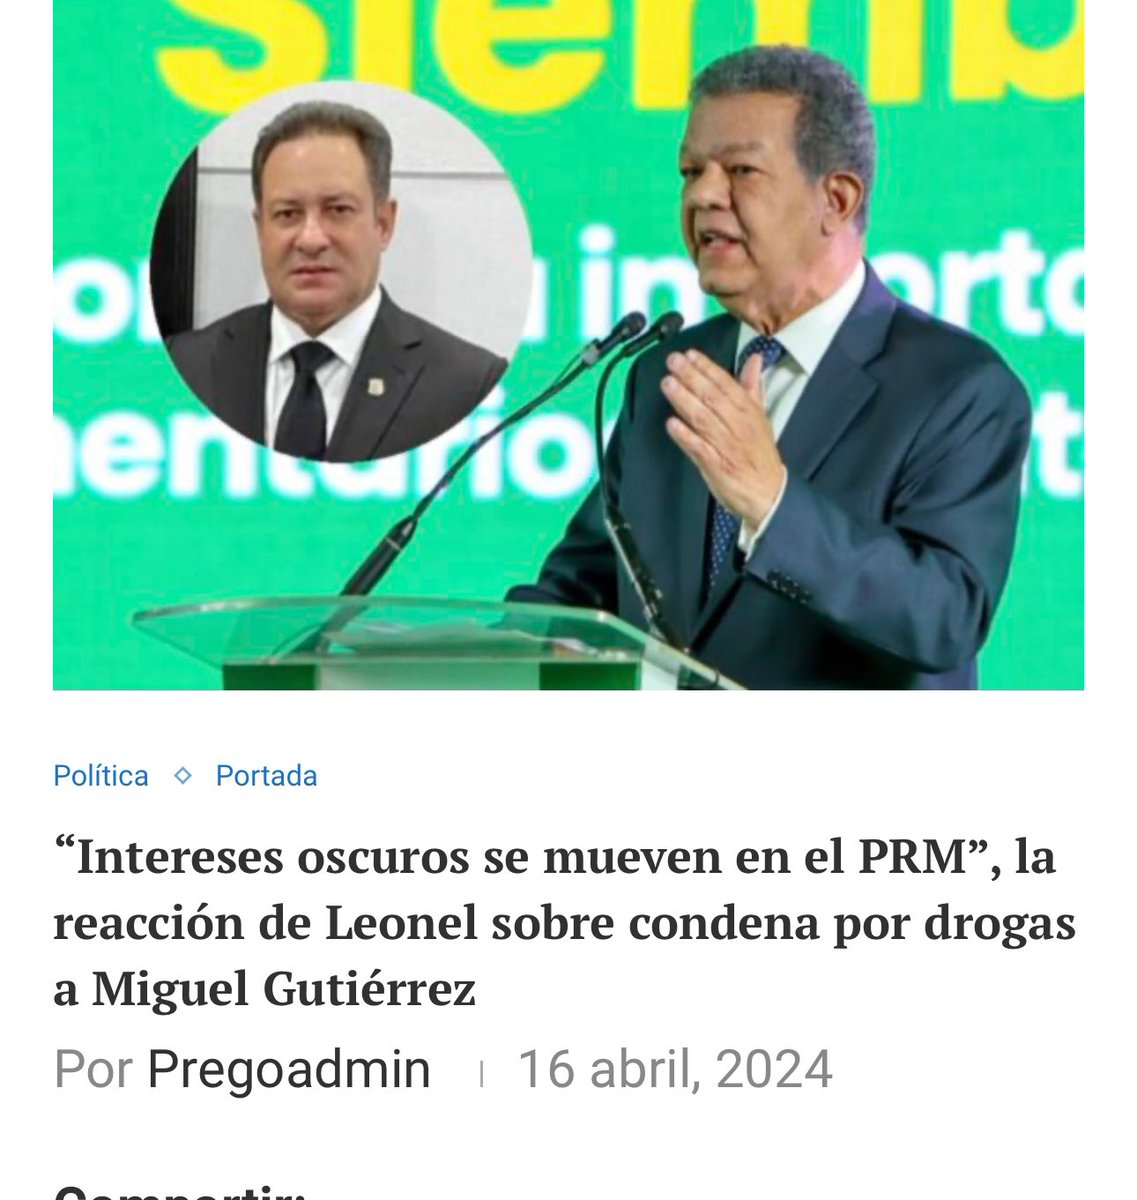 Lo que @LeonelFernandez no dice es que toda la droga traficó Gutiérrez para EU No lo hizo en gobierno PRM . Lo hizo del 2014 a 2020 , según el expediente, con el gobierno de su aliada mafia Danilato.